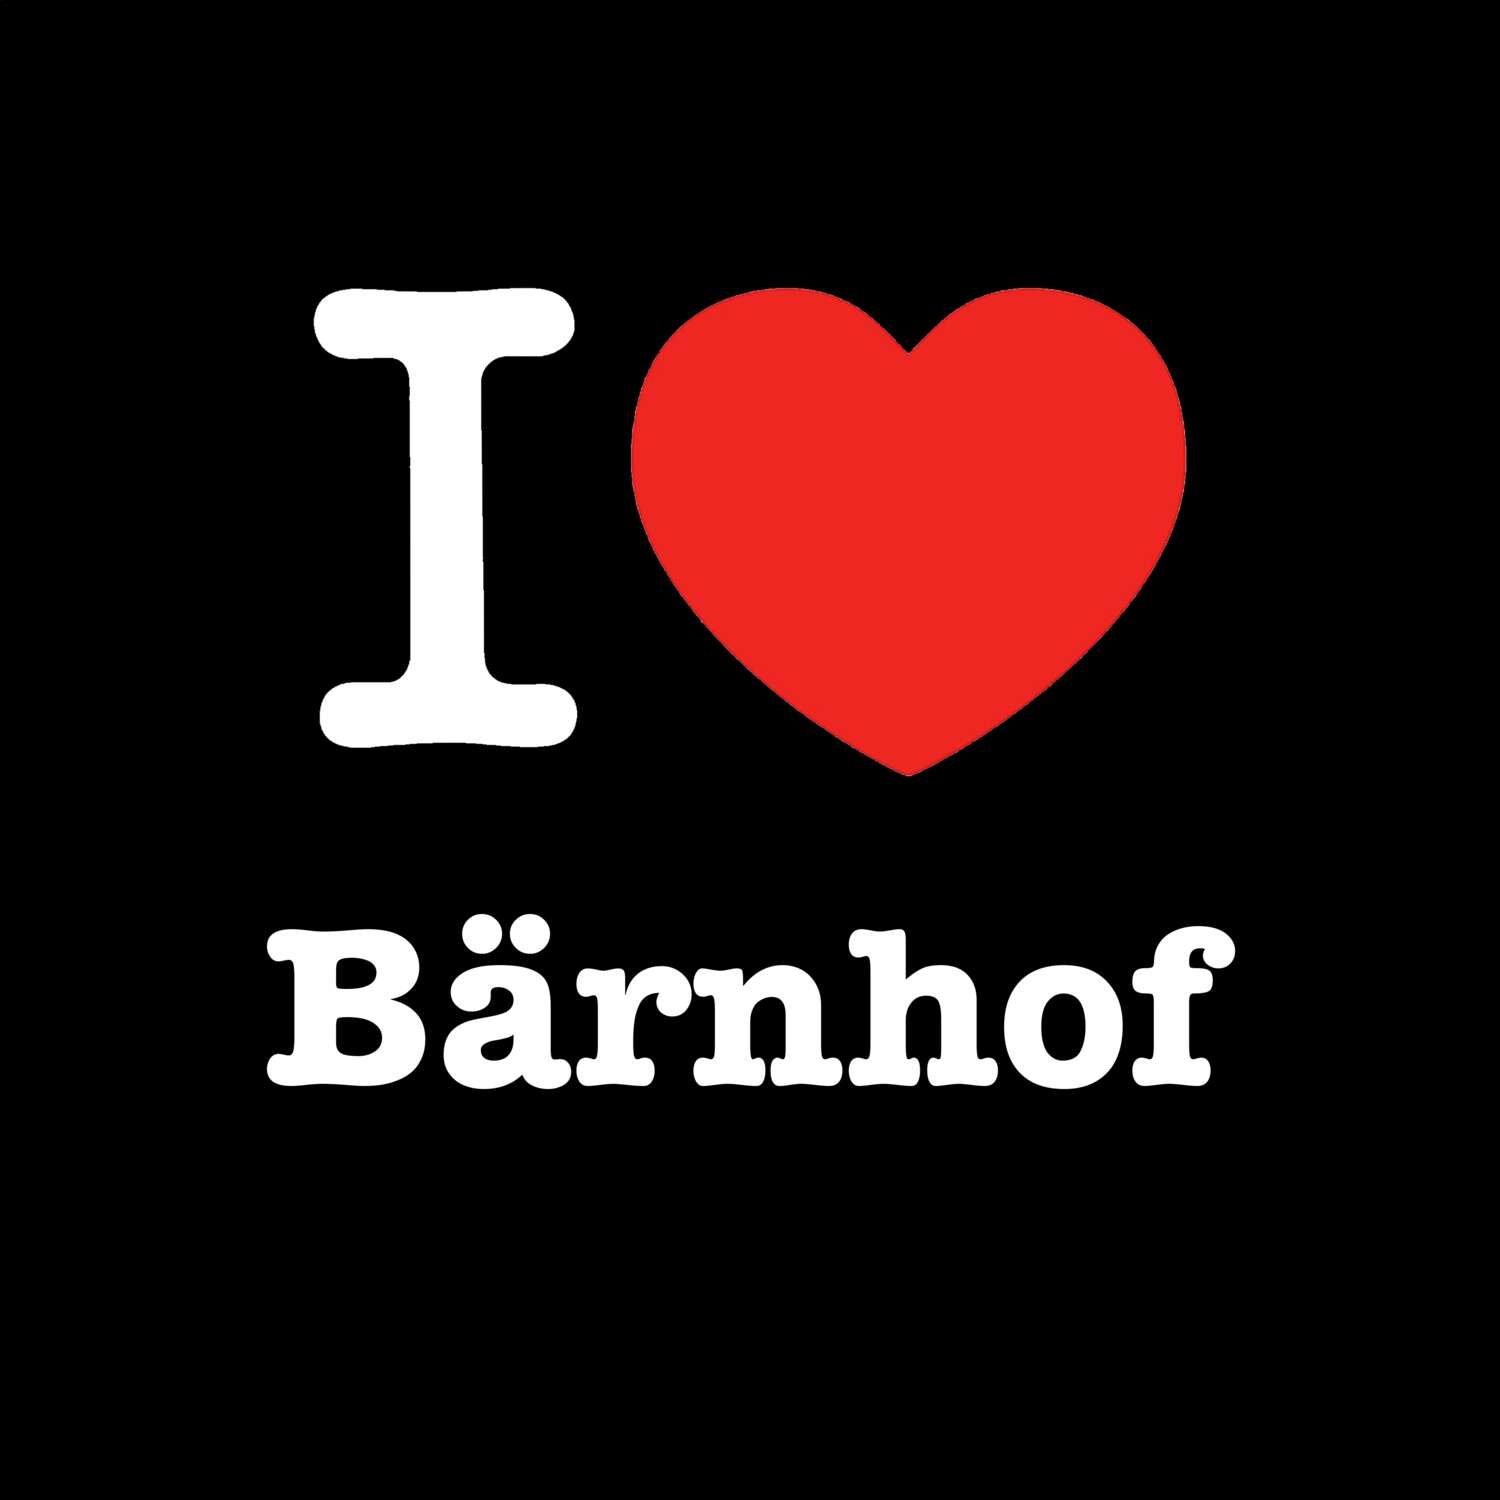 Bärnhof T-Shirt »I love«